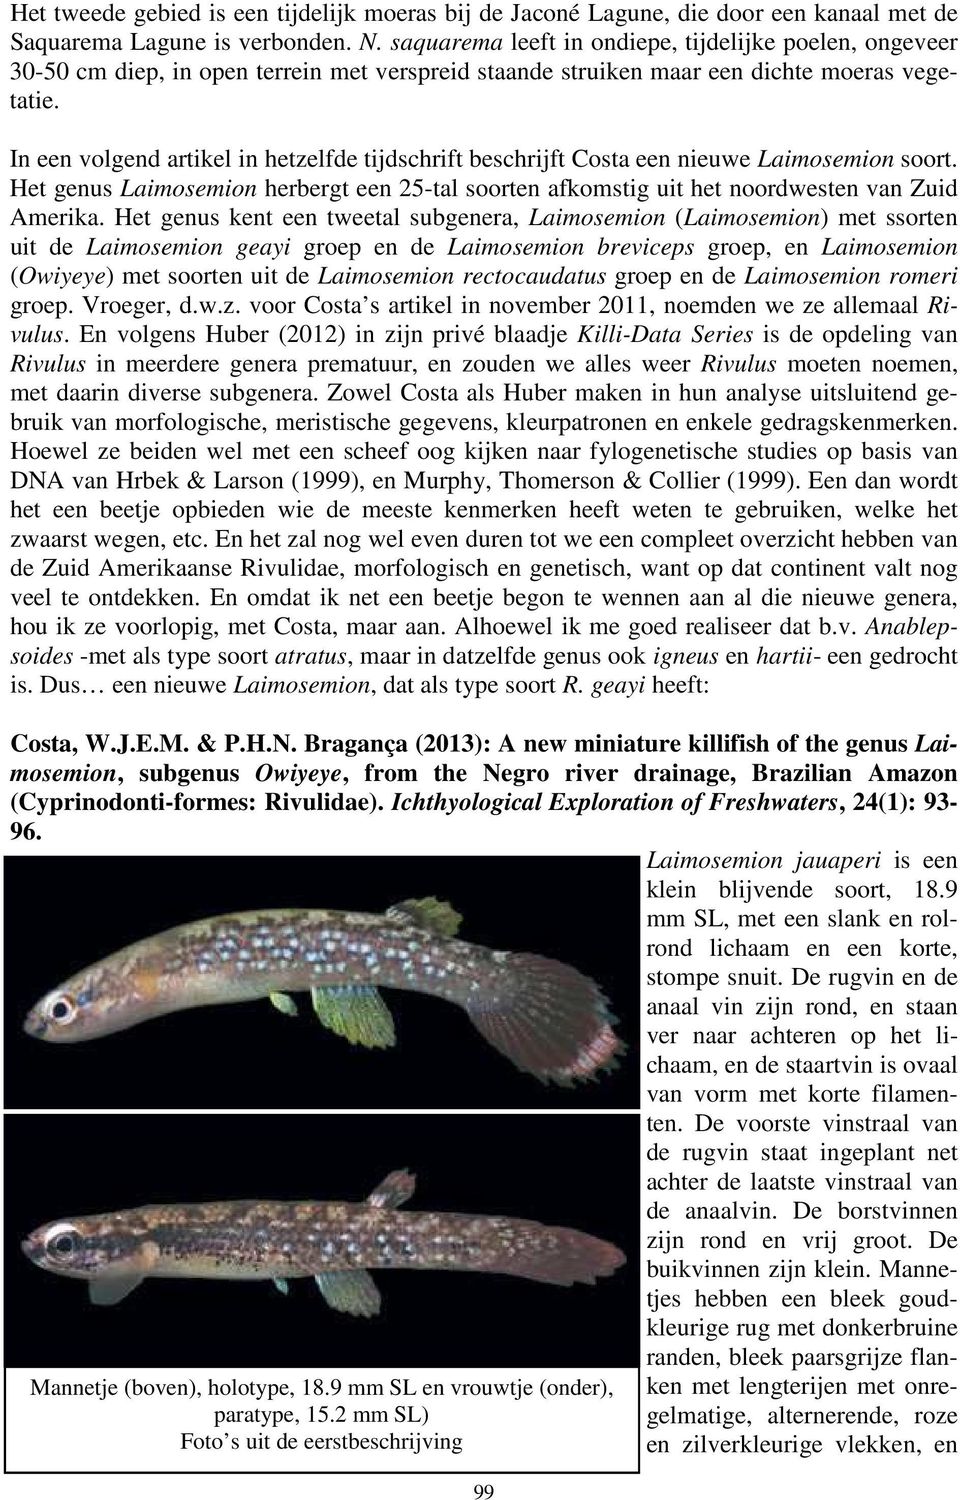 In een volgend artikel in hetzelfde tijdschrift beschrijft Costa een nieuwe Laimosemion soort. Het genus Laimosemion herbergt een 25-tal soorten afkomstig uit het noordwesten van Zuid Amerika.